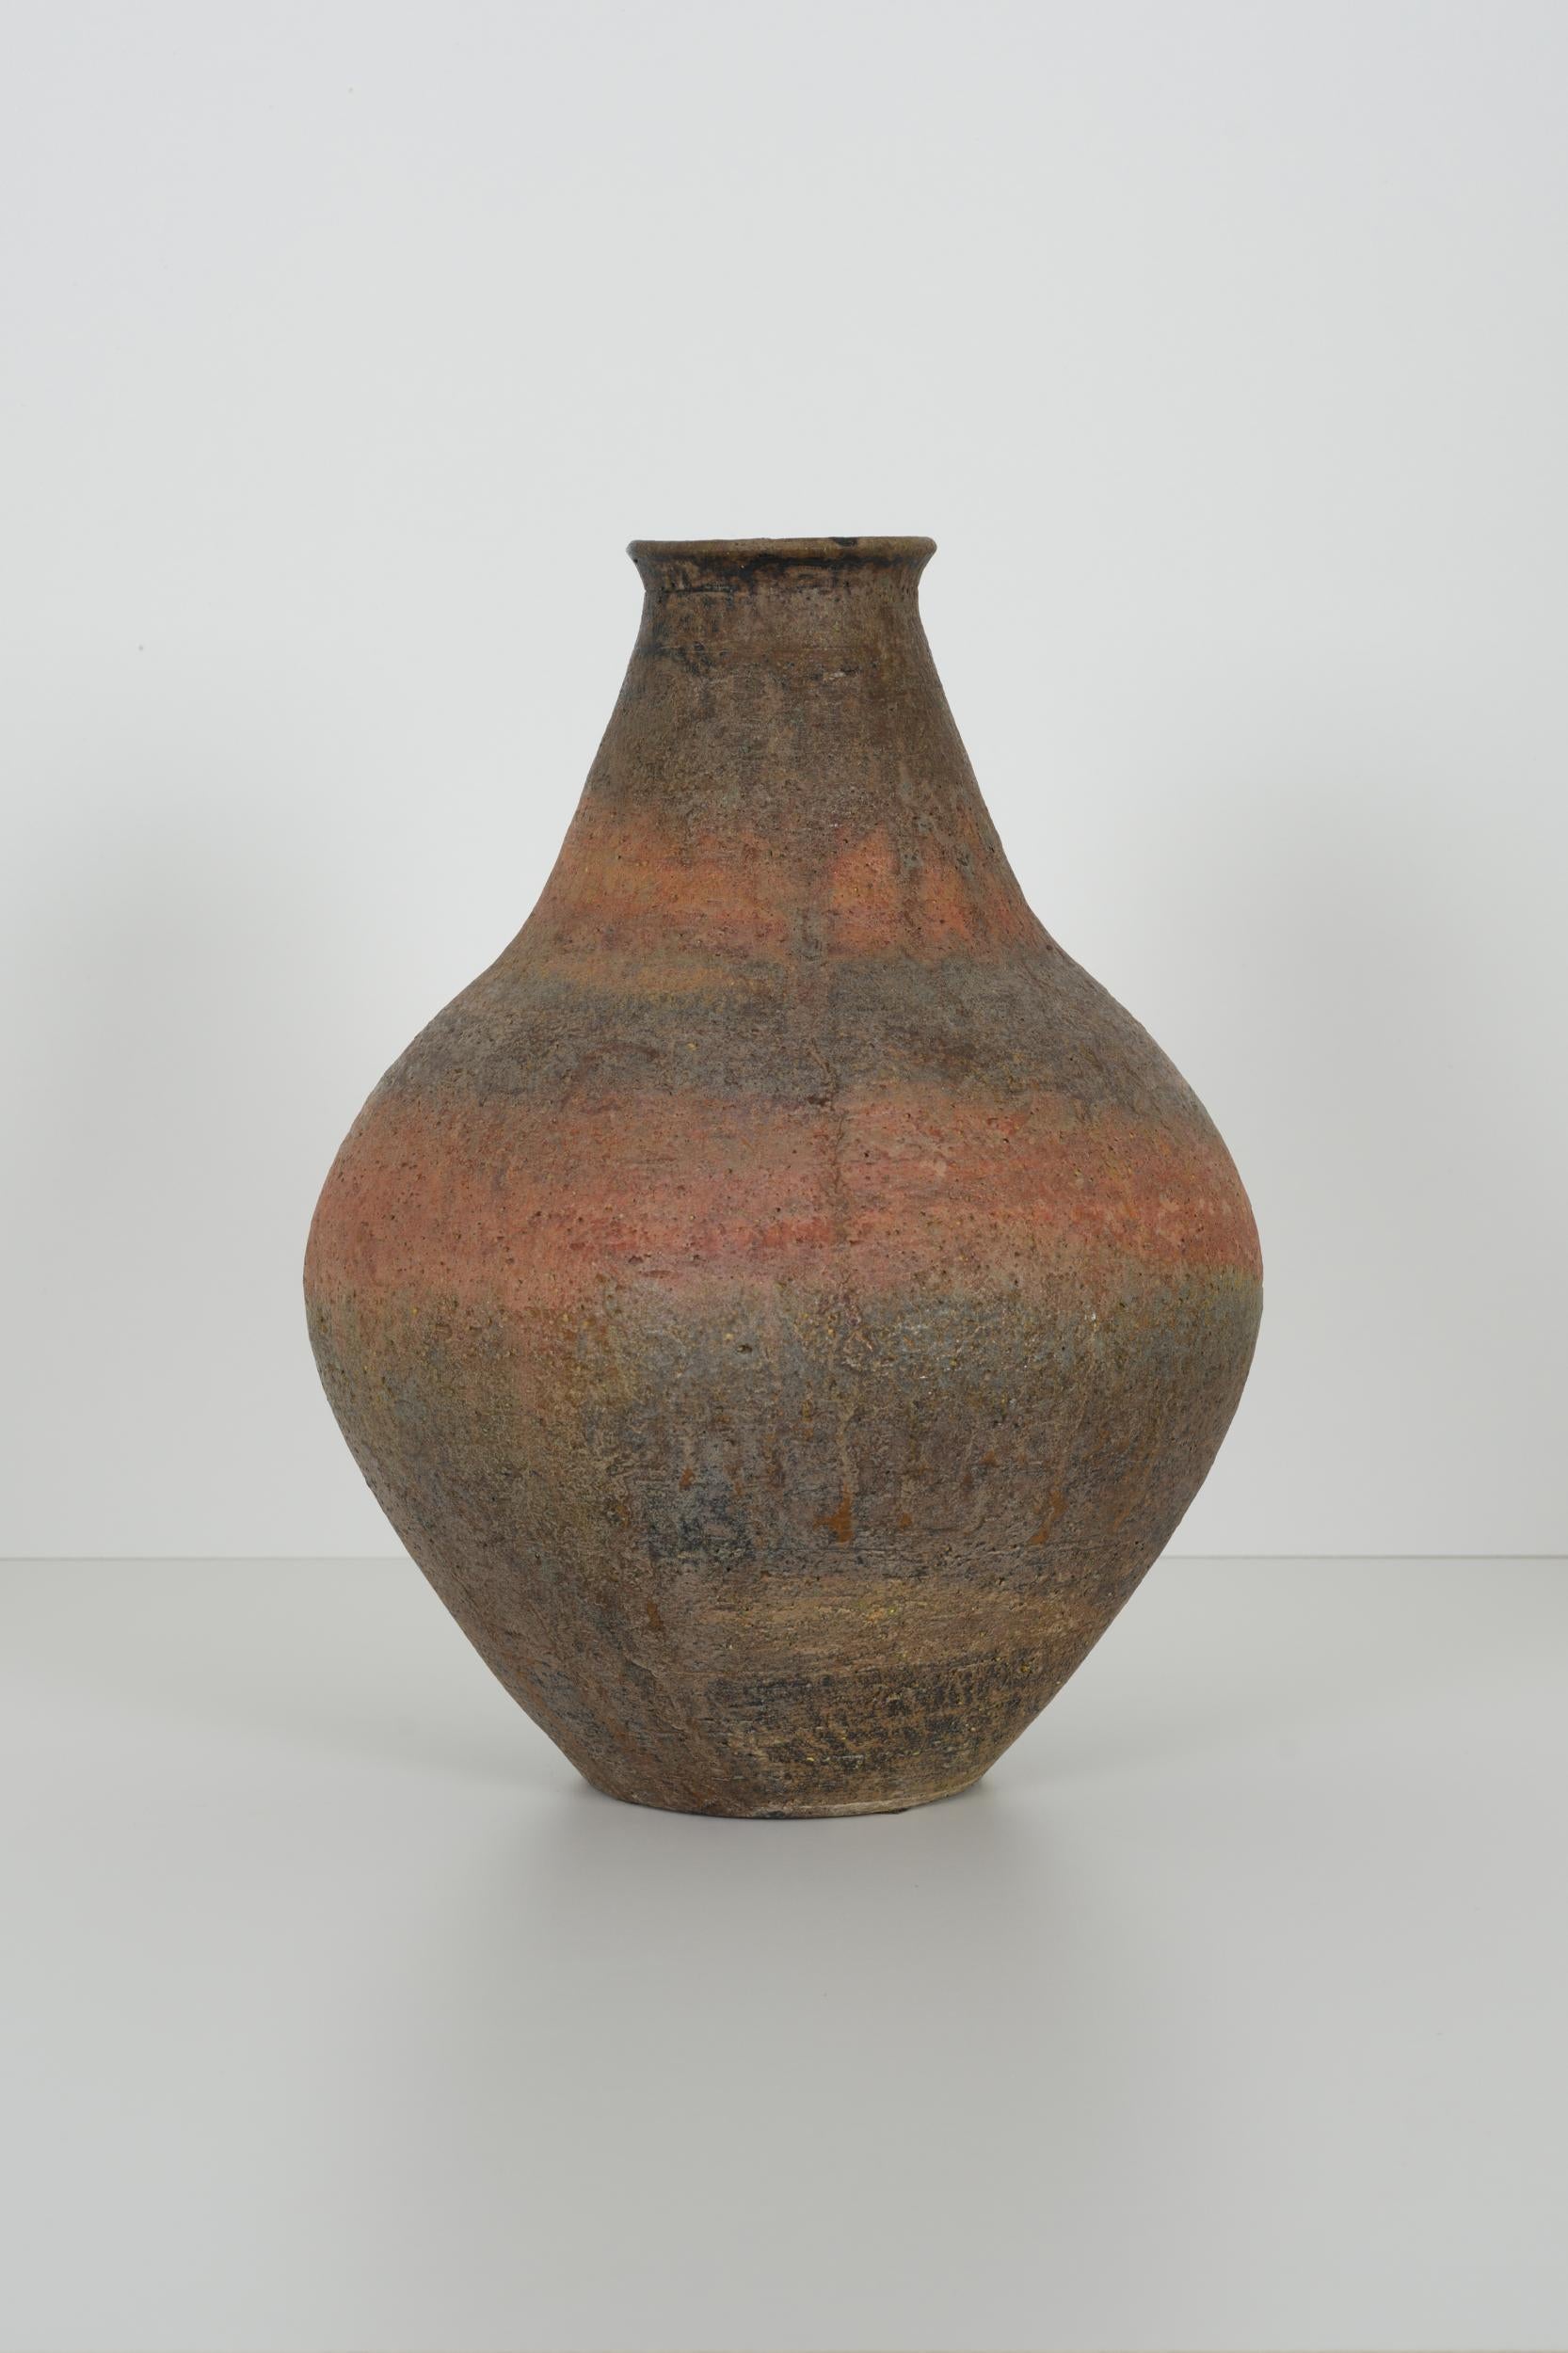 Fantoni blub shaped vase, with layered glazes. Signed underside Fantoni Italy with layered glazes. Signed underside Fantoni Italy.